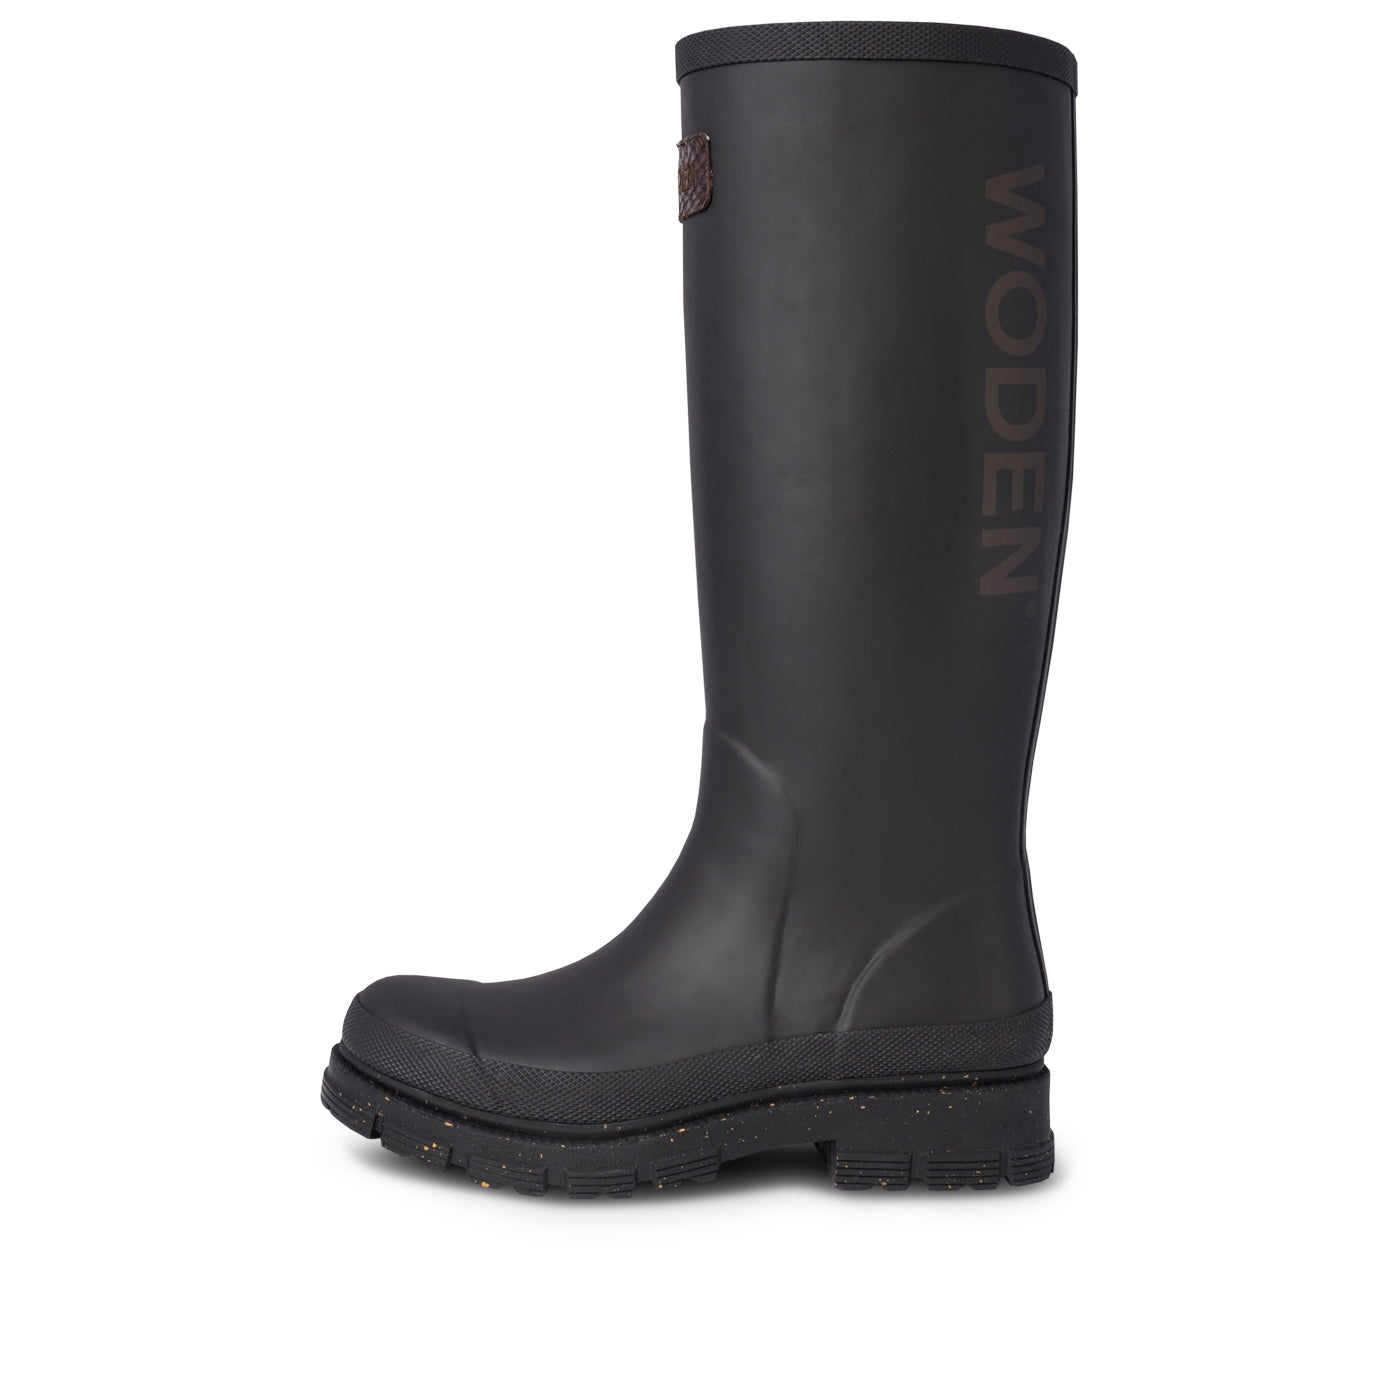 WODEN Le Waterproof Rubber Boots 020 Black